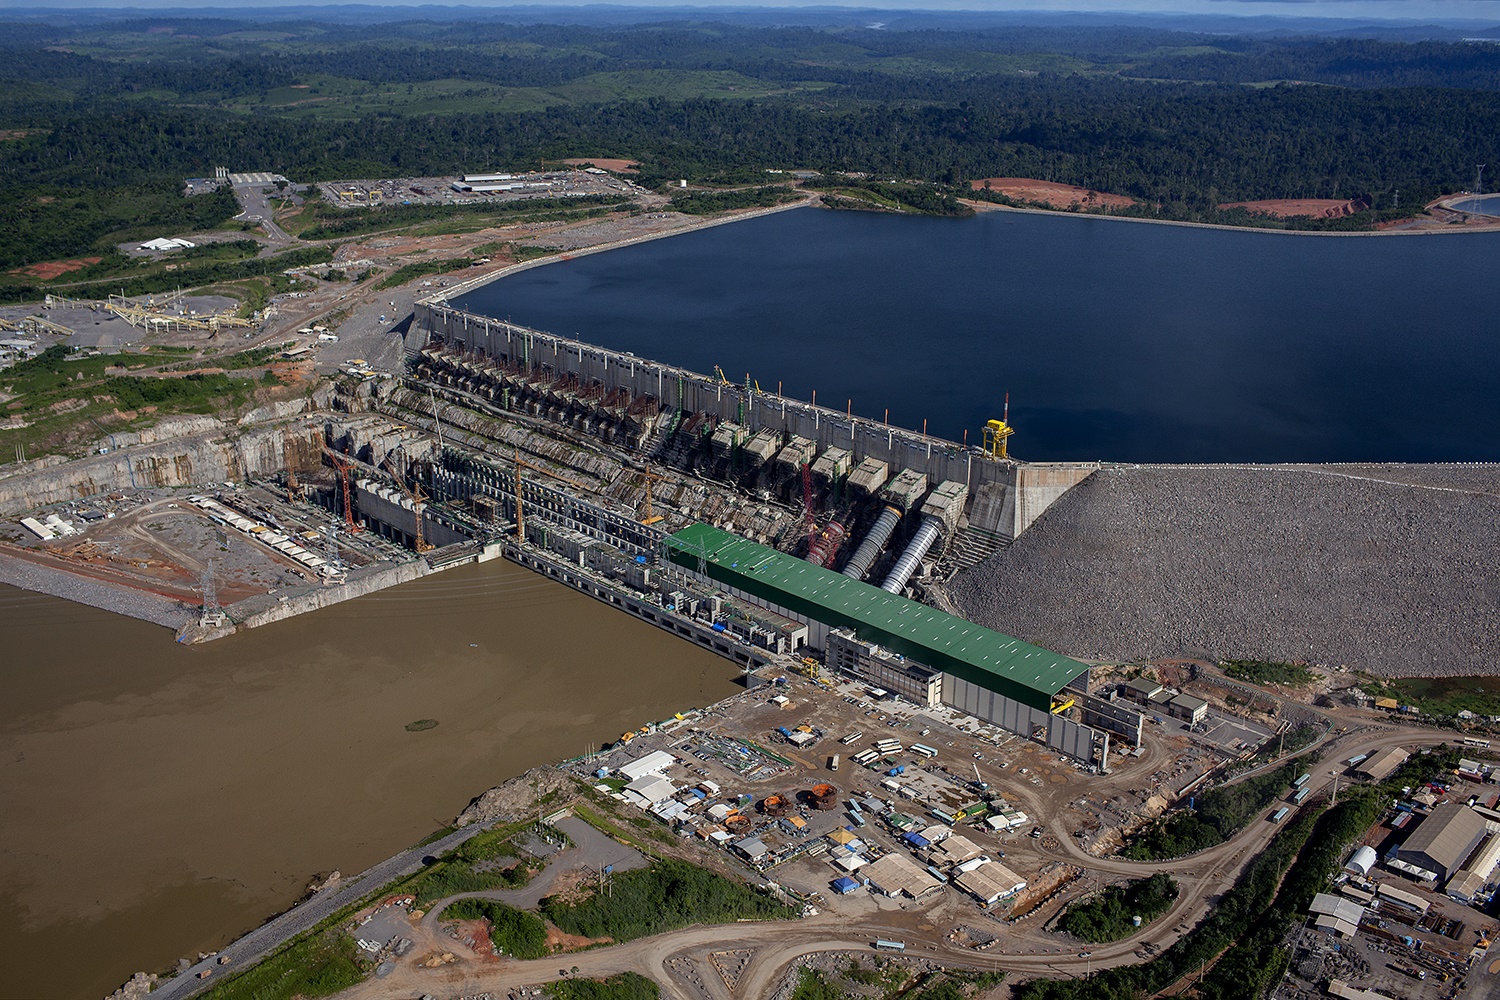 Vista aérea da Usina Hidrelétrica de Belo Monte na área onde estão colocadas 18 turbinas. Foto Marizilda Cruppe.